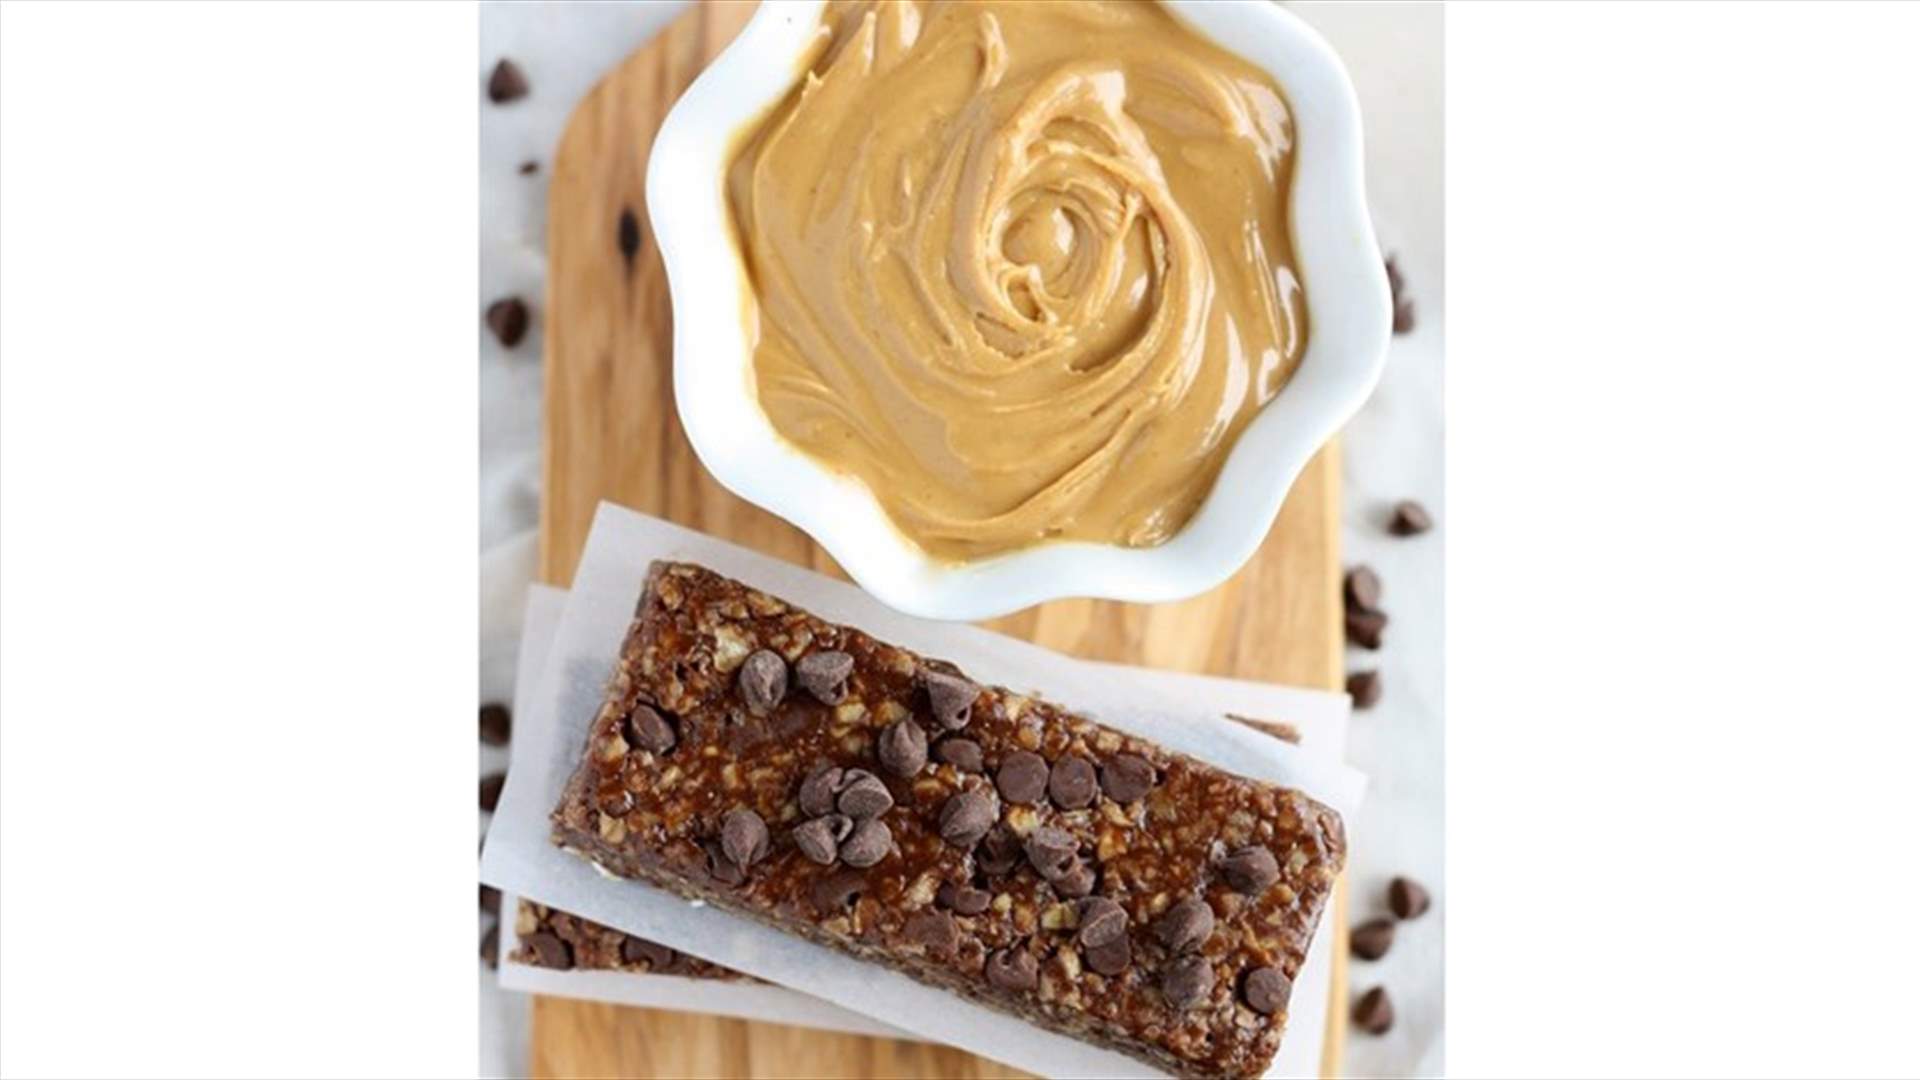 وصفة حلوى من دون خبز: أصابع الشوكولاته مع زبدة الفول السوداني والشوفان